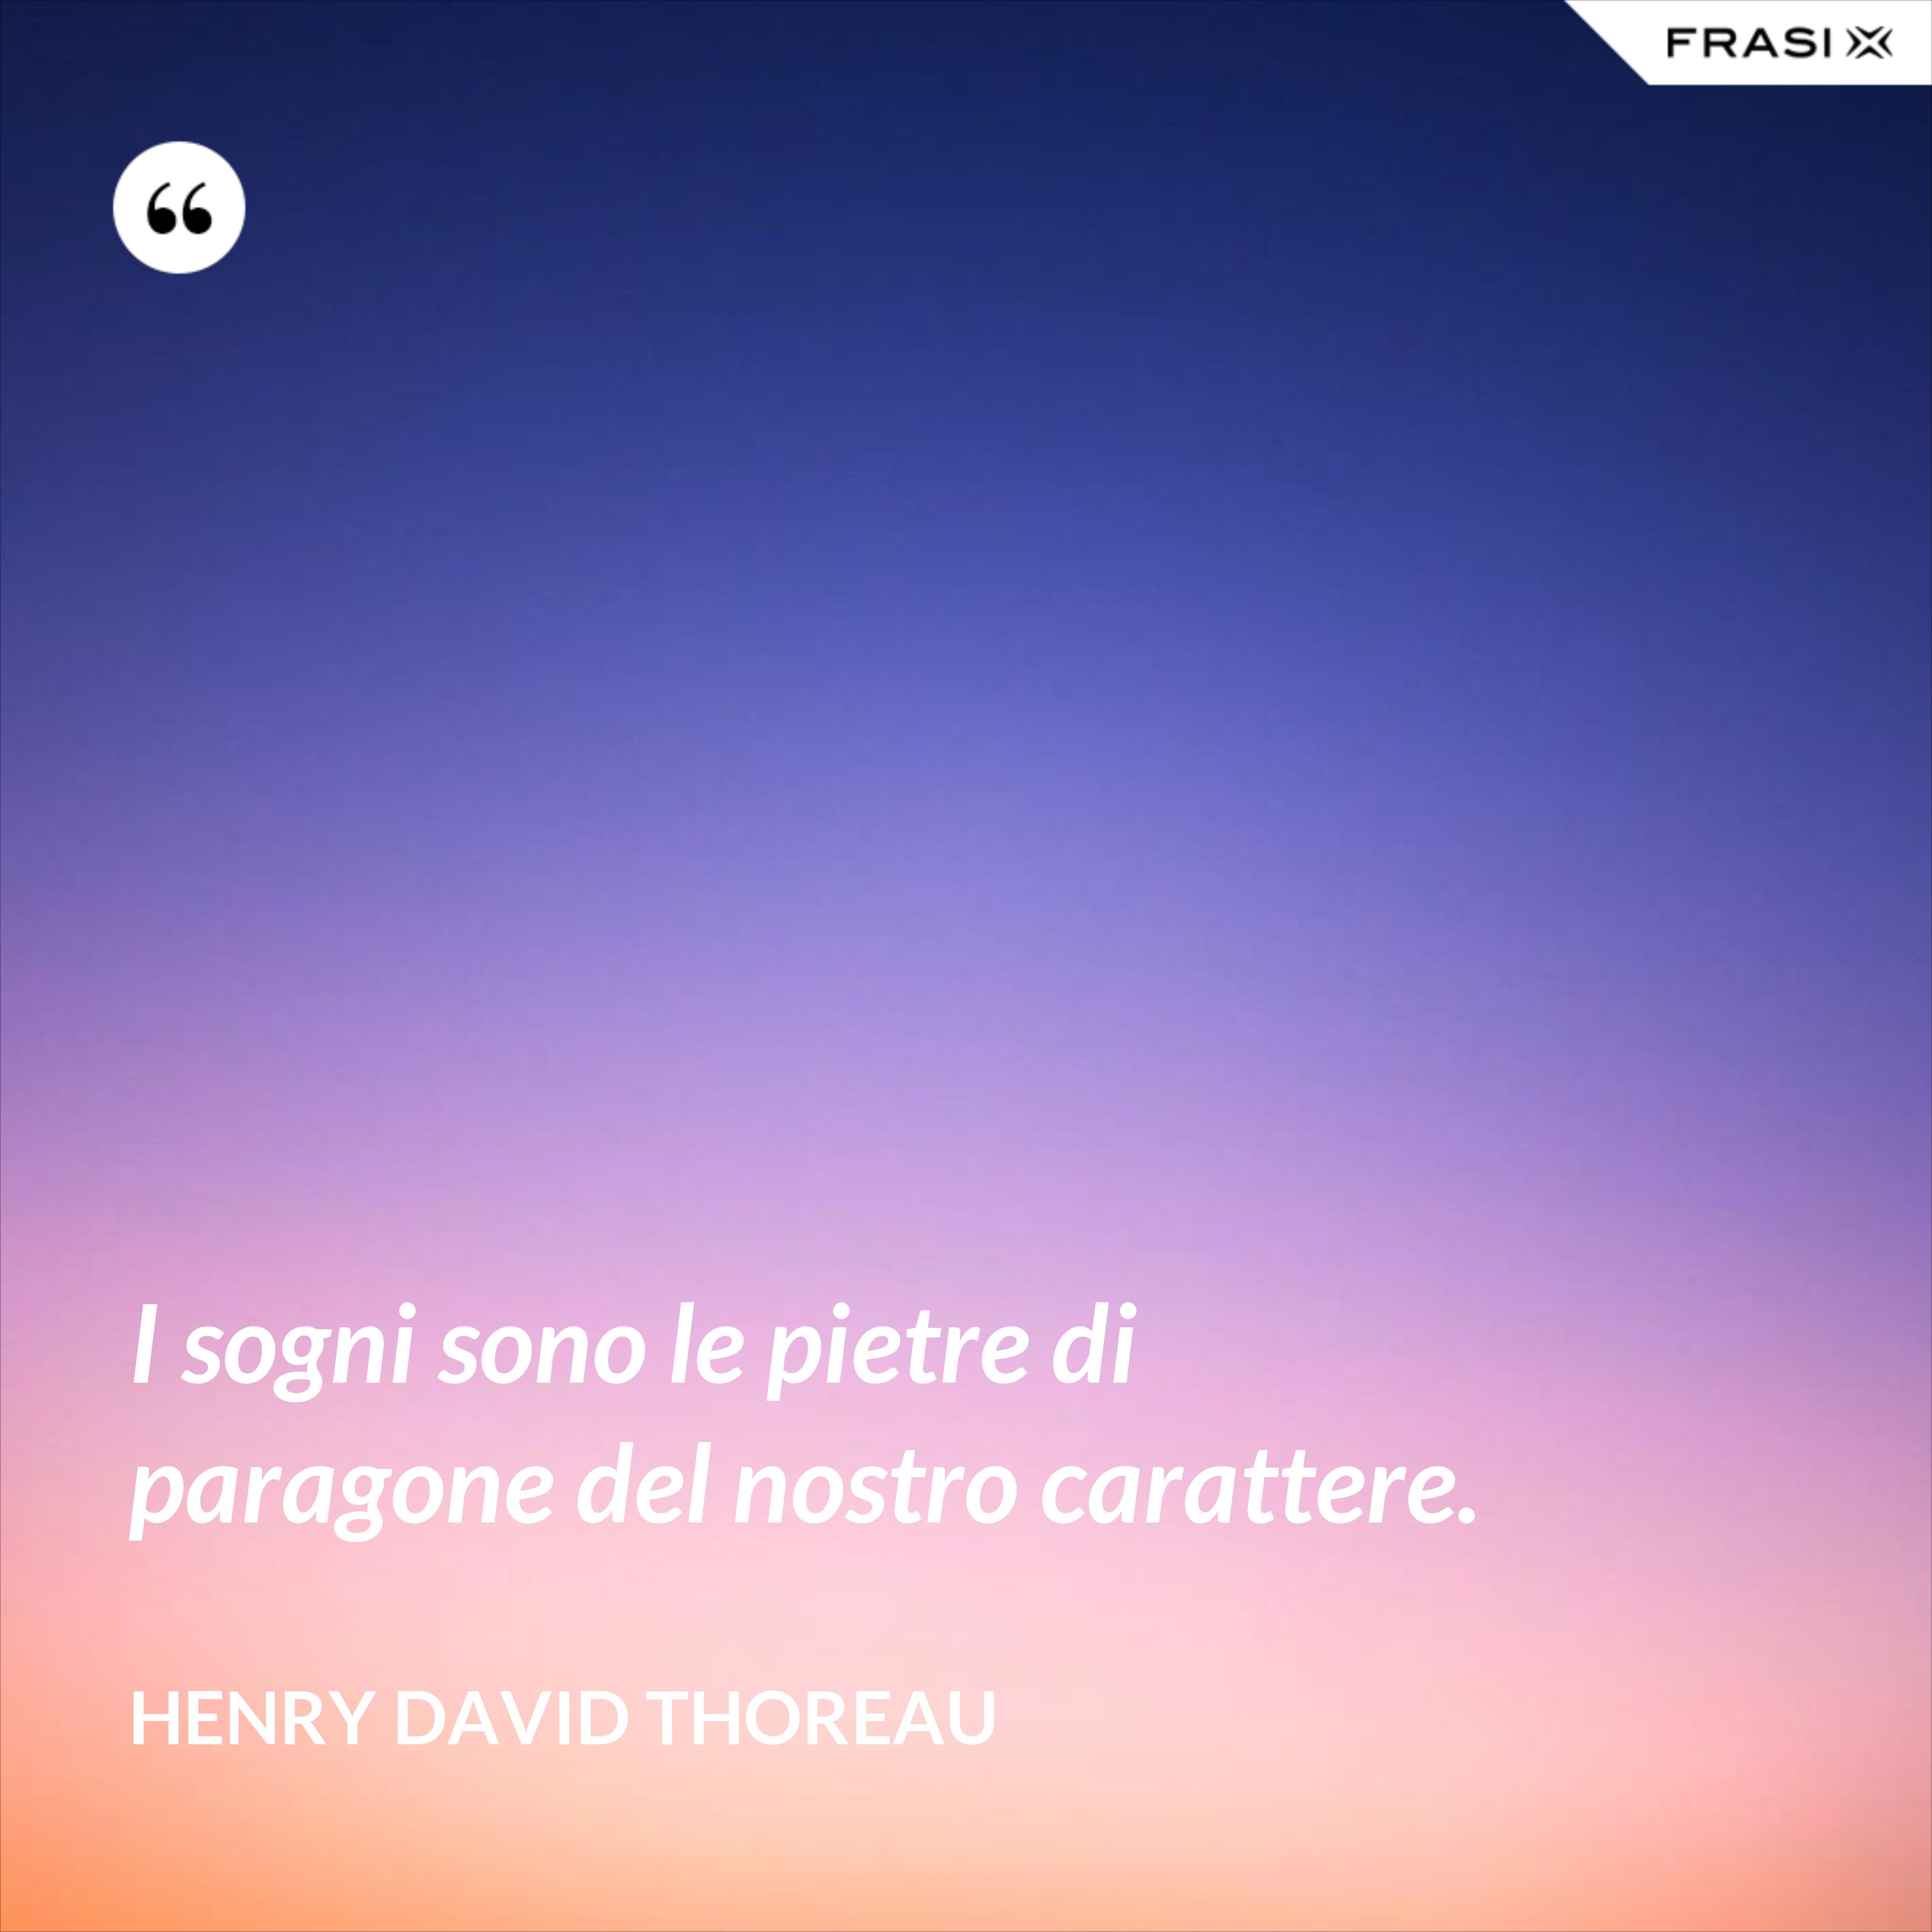 I sogni sono le pietre di paragone del nostro carattere. - Henry David Thoreau